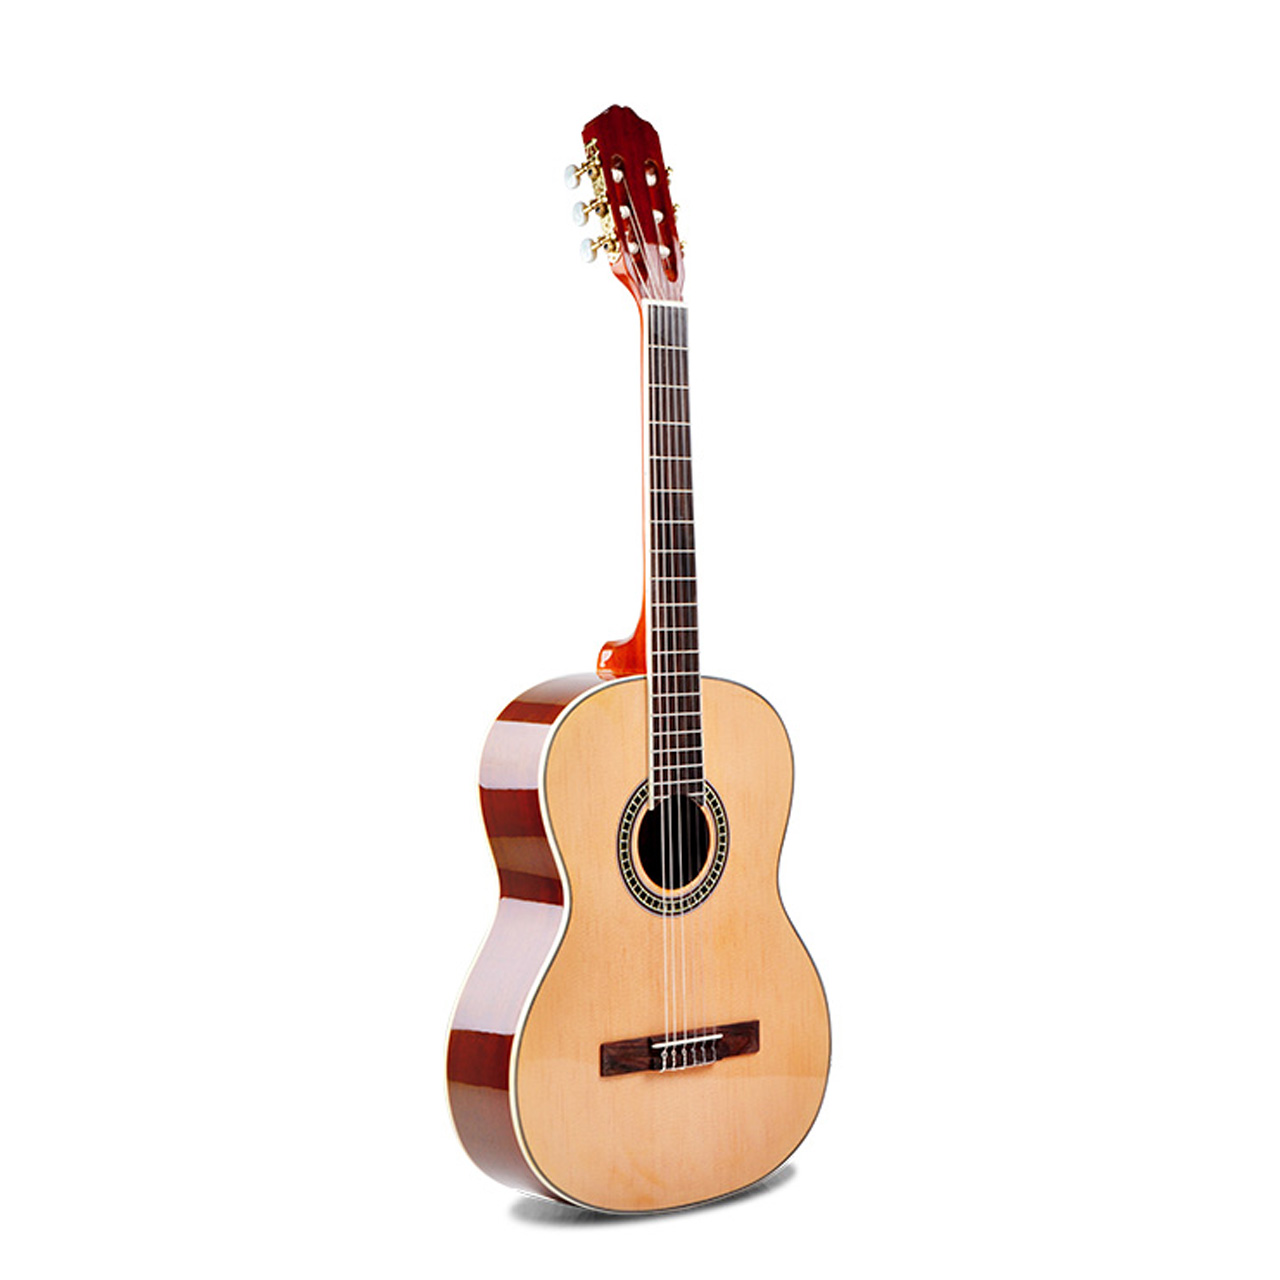 گیتار کلاسیک گریپ مدل EC-350